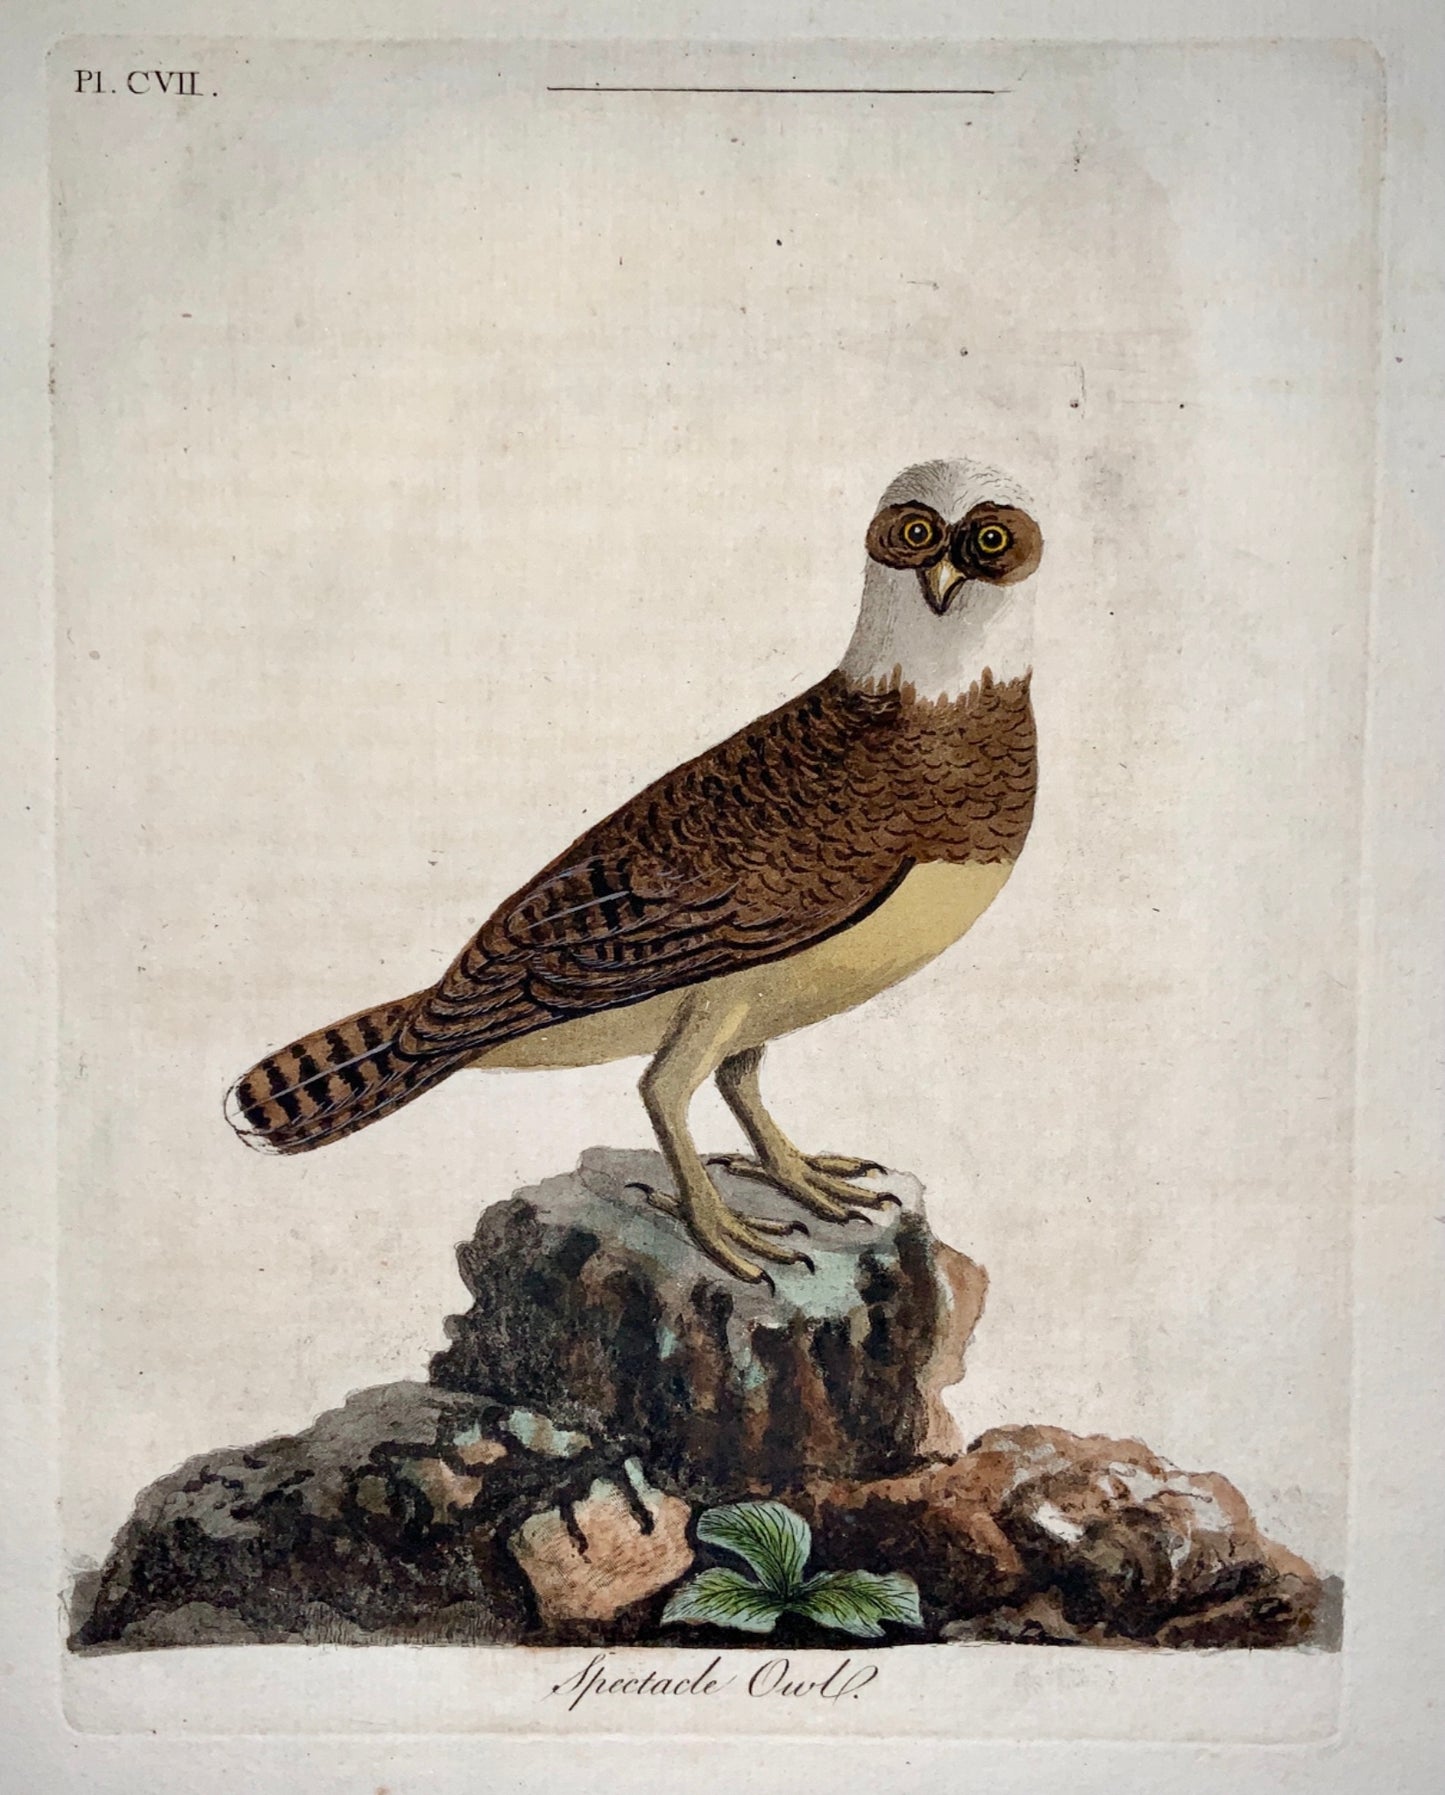 1785 John Latham - Synopsis - SPECTACLE OWL Ornithology - hand coloured